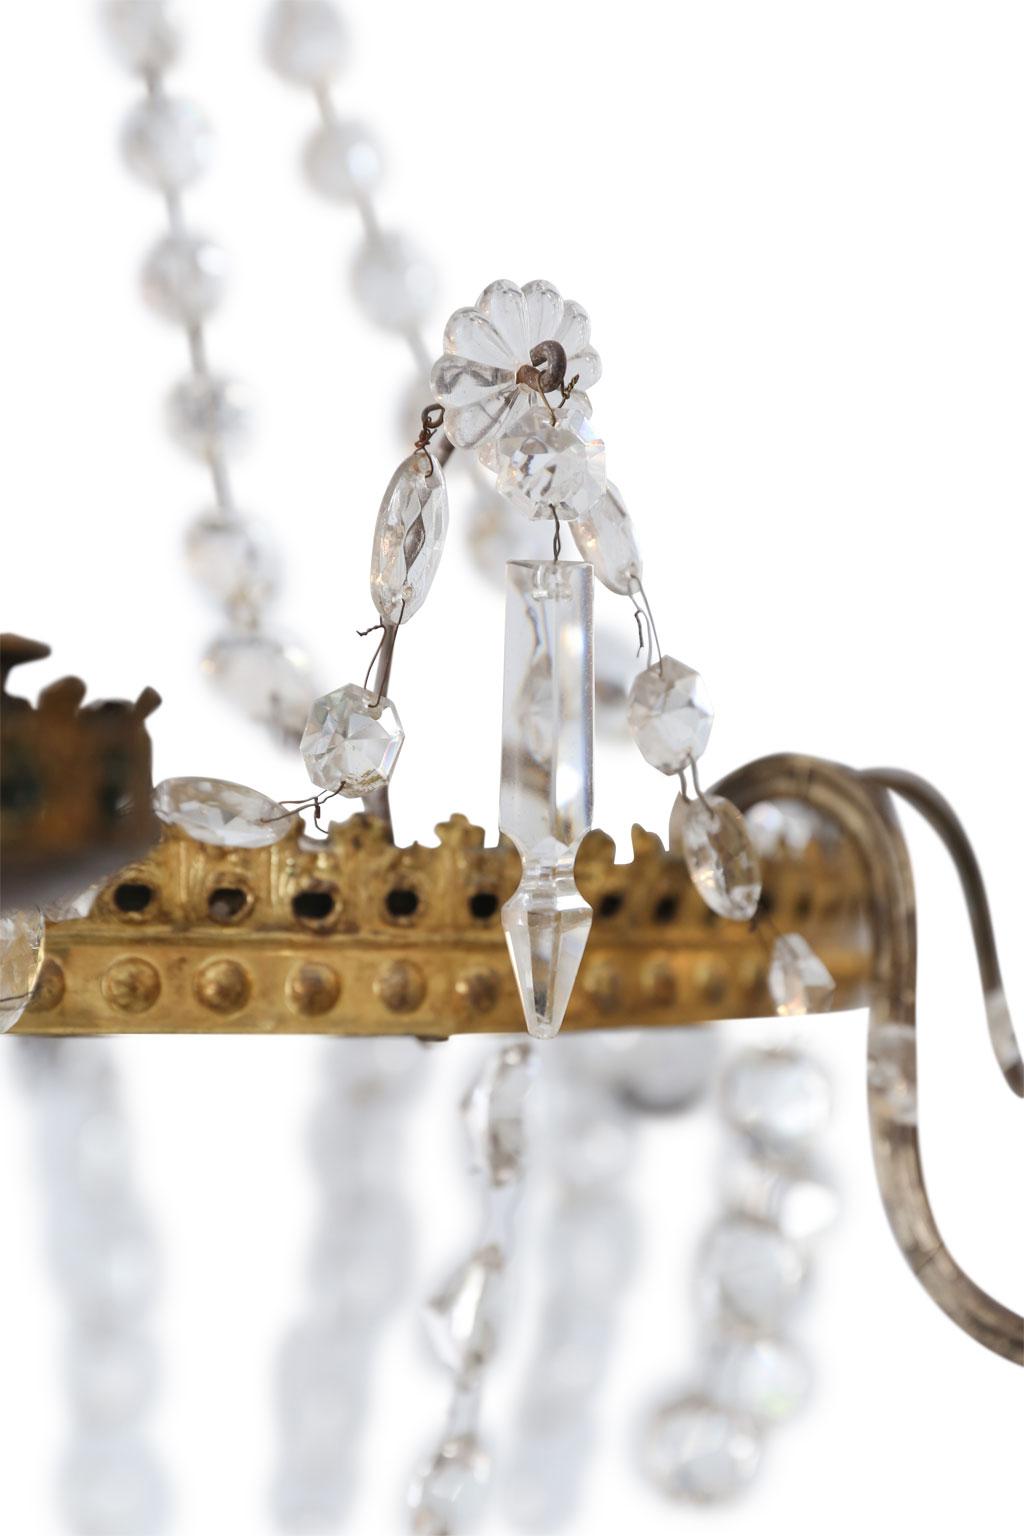 Neoklassizistischer Kronleuchter aus vergoldetem Zinn und Kristall, um 1860-1880, mit zwei Reihen von durchbrochenen Zinnringen, aufgereiht mit Kristallprismen und Anhängern. Diese italienische Leuchte ist für den Gebrauch in den USA neu verdrahtet